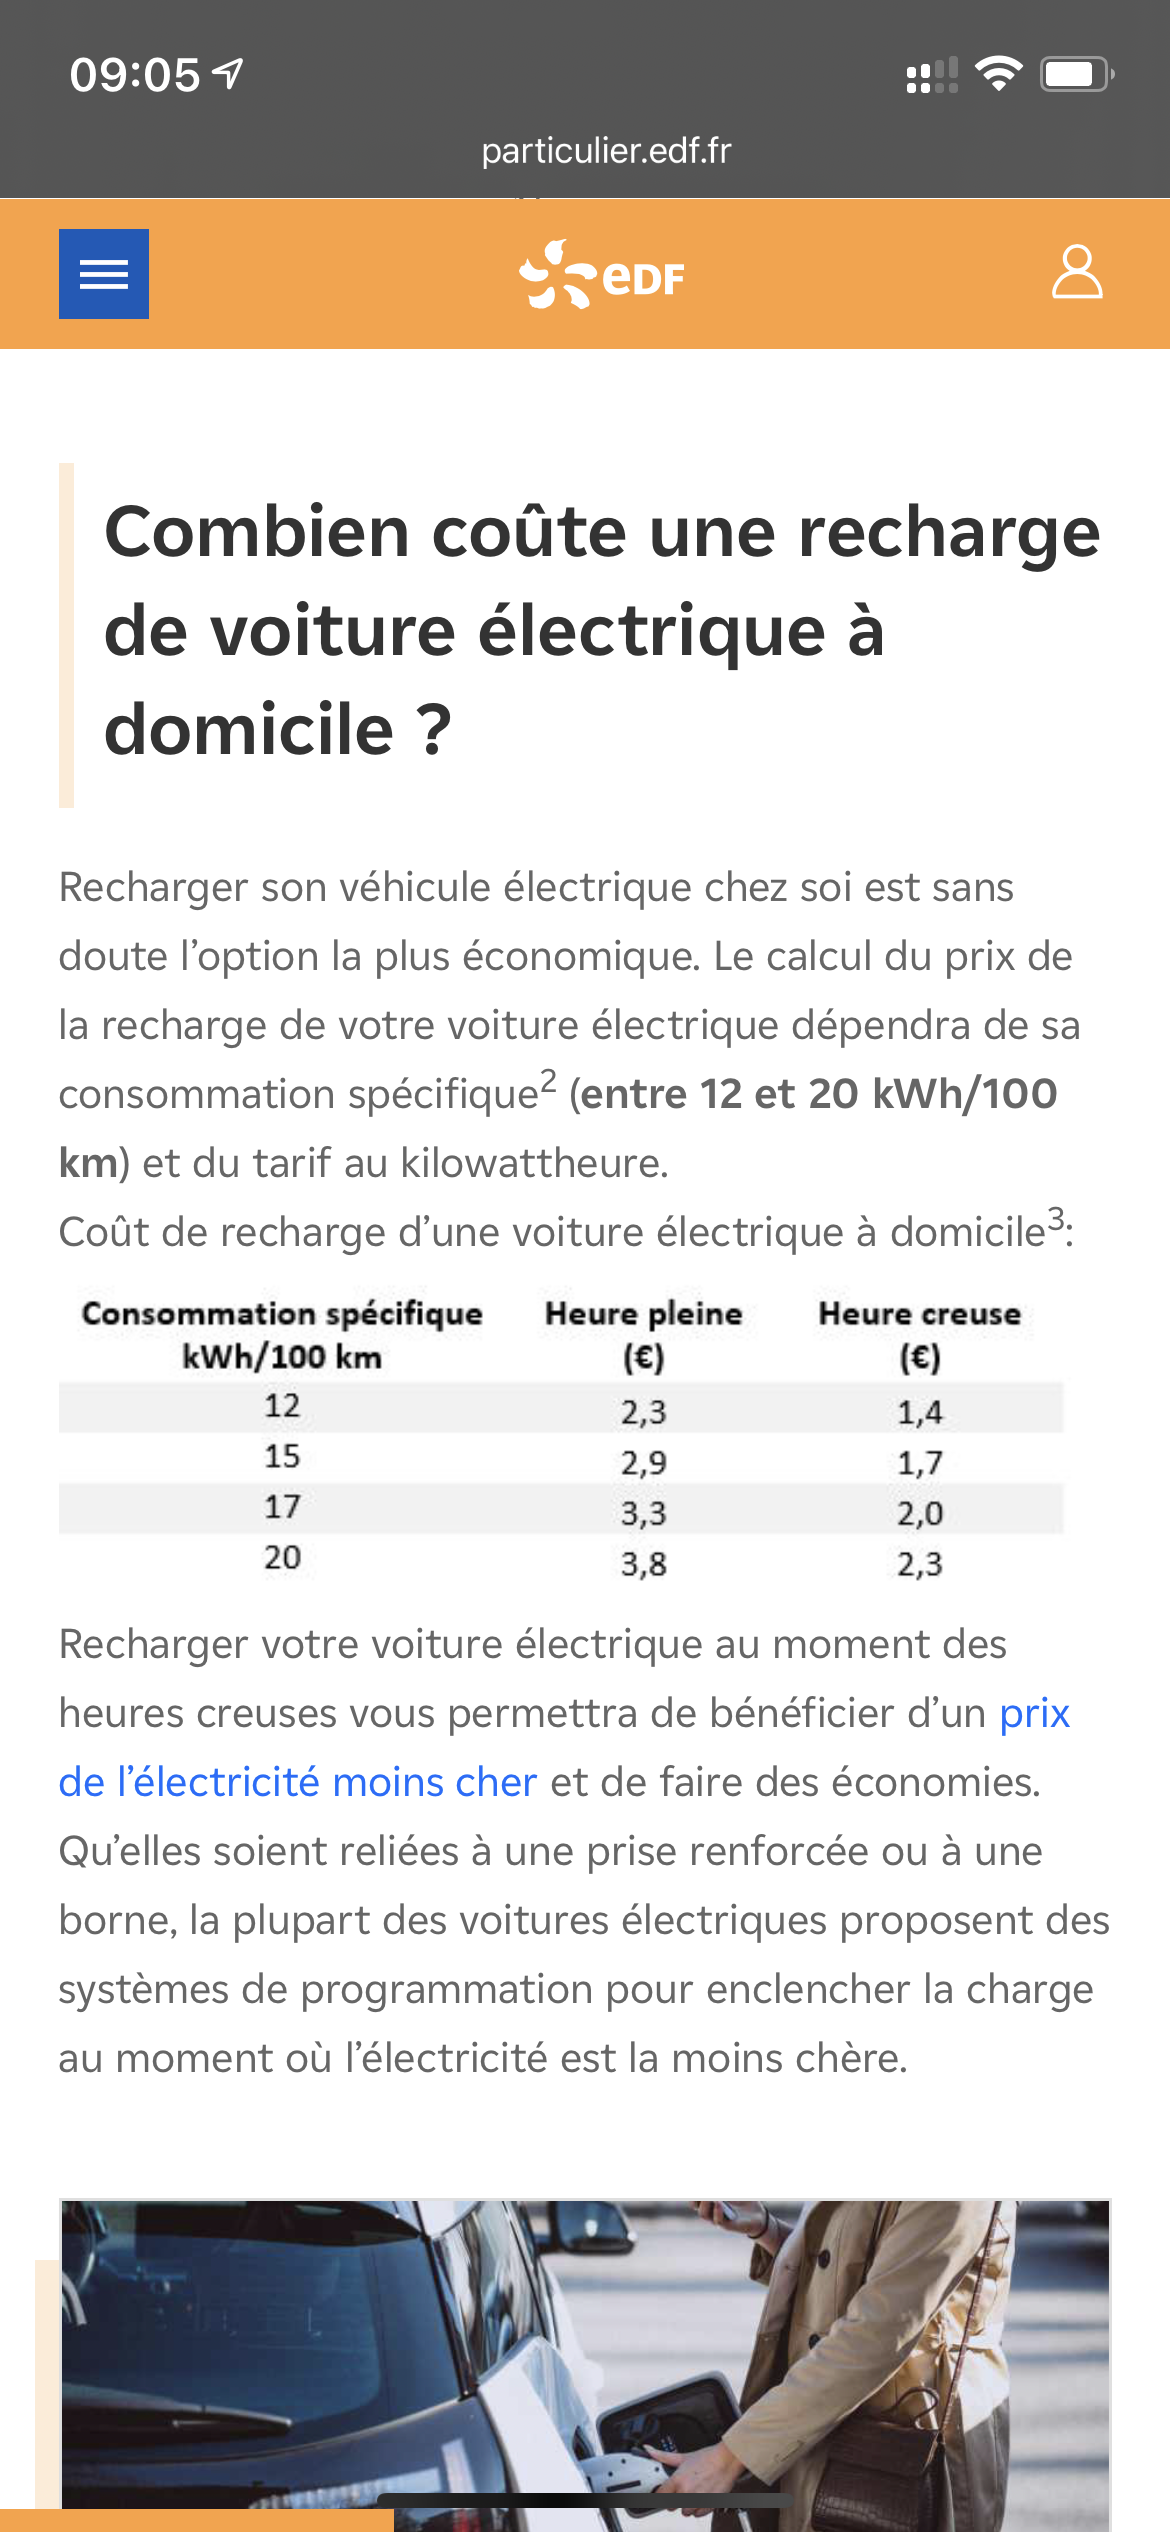 Recharger une voiture électrique chez soi : combien ça coûte ?